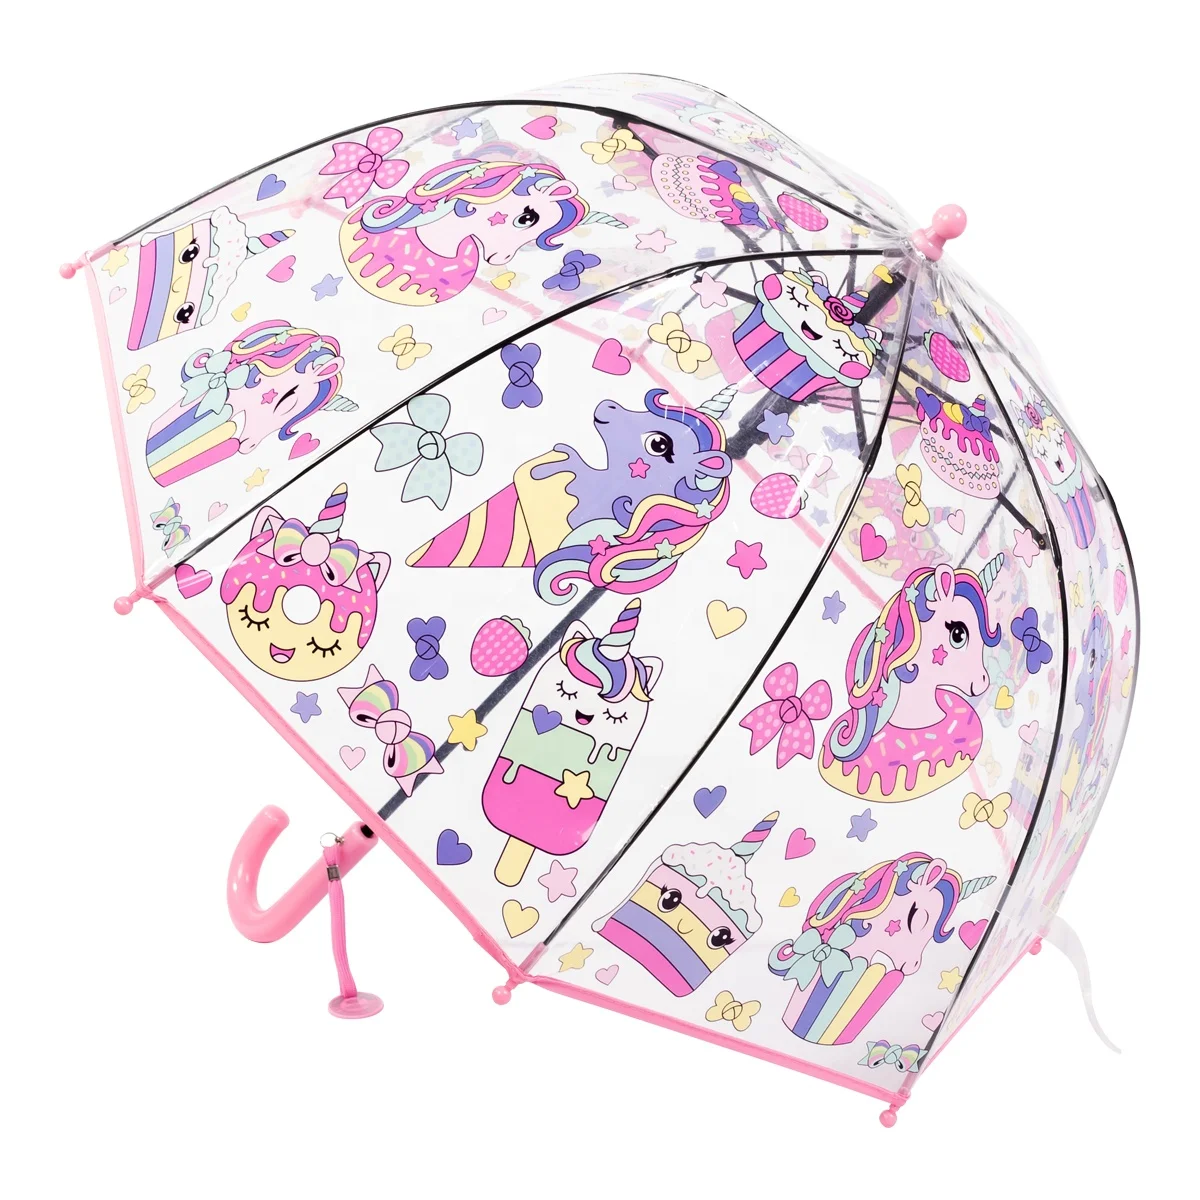 RST Гуанчжоу оптовая продажа Детский дешевый зонтик новый купол 19 дюймов маленький размер прозрачный зонт с единорогом